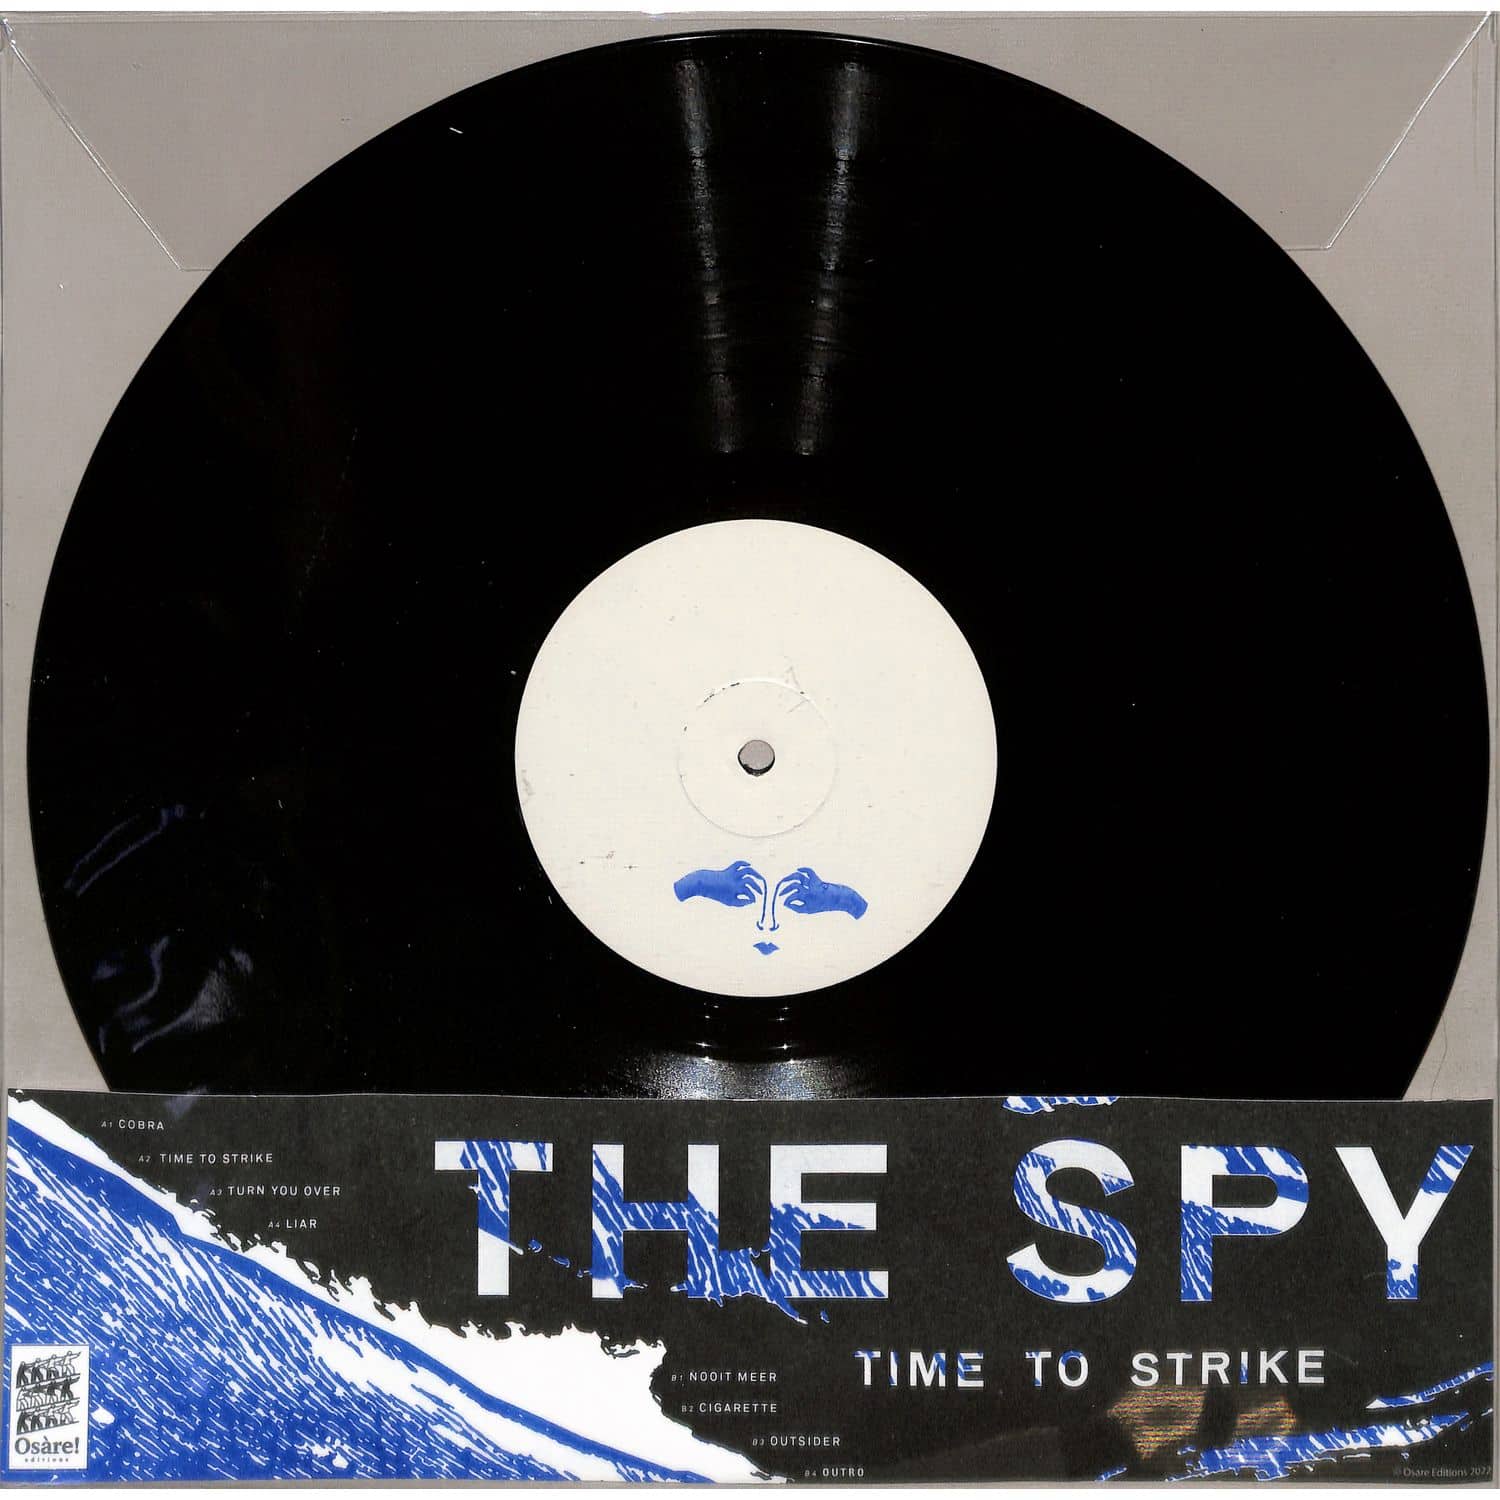 The Spy - TIME TO STRIKE 